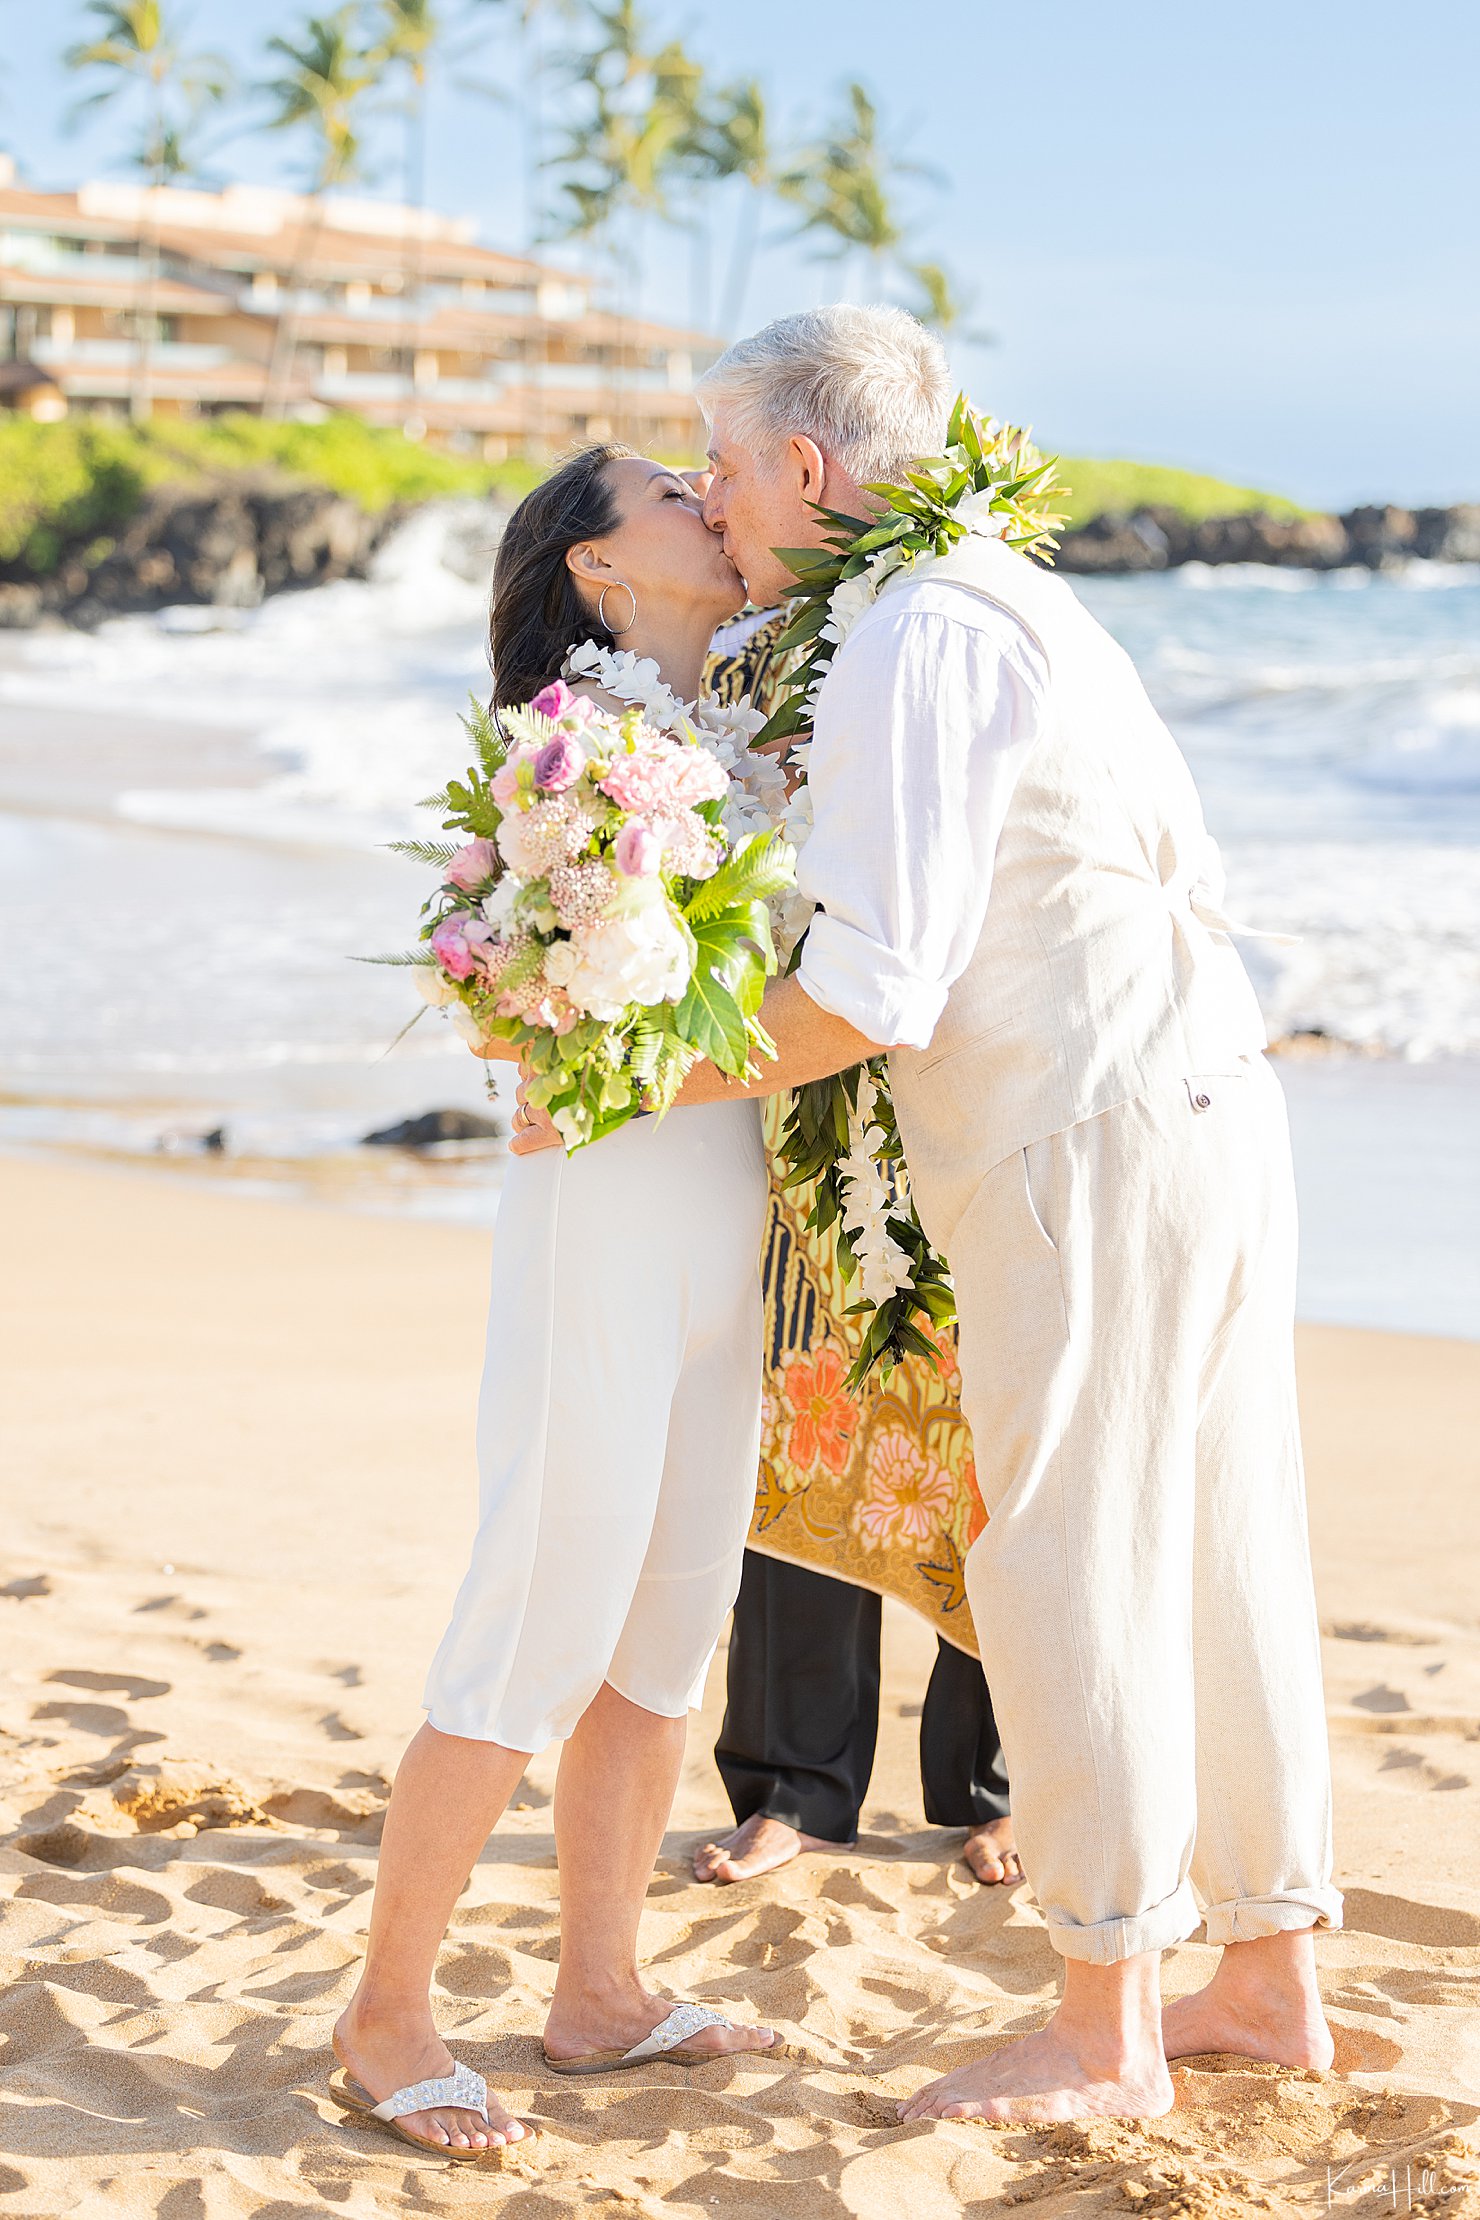 First Kiss at a Maui Beach Wedding